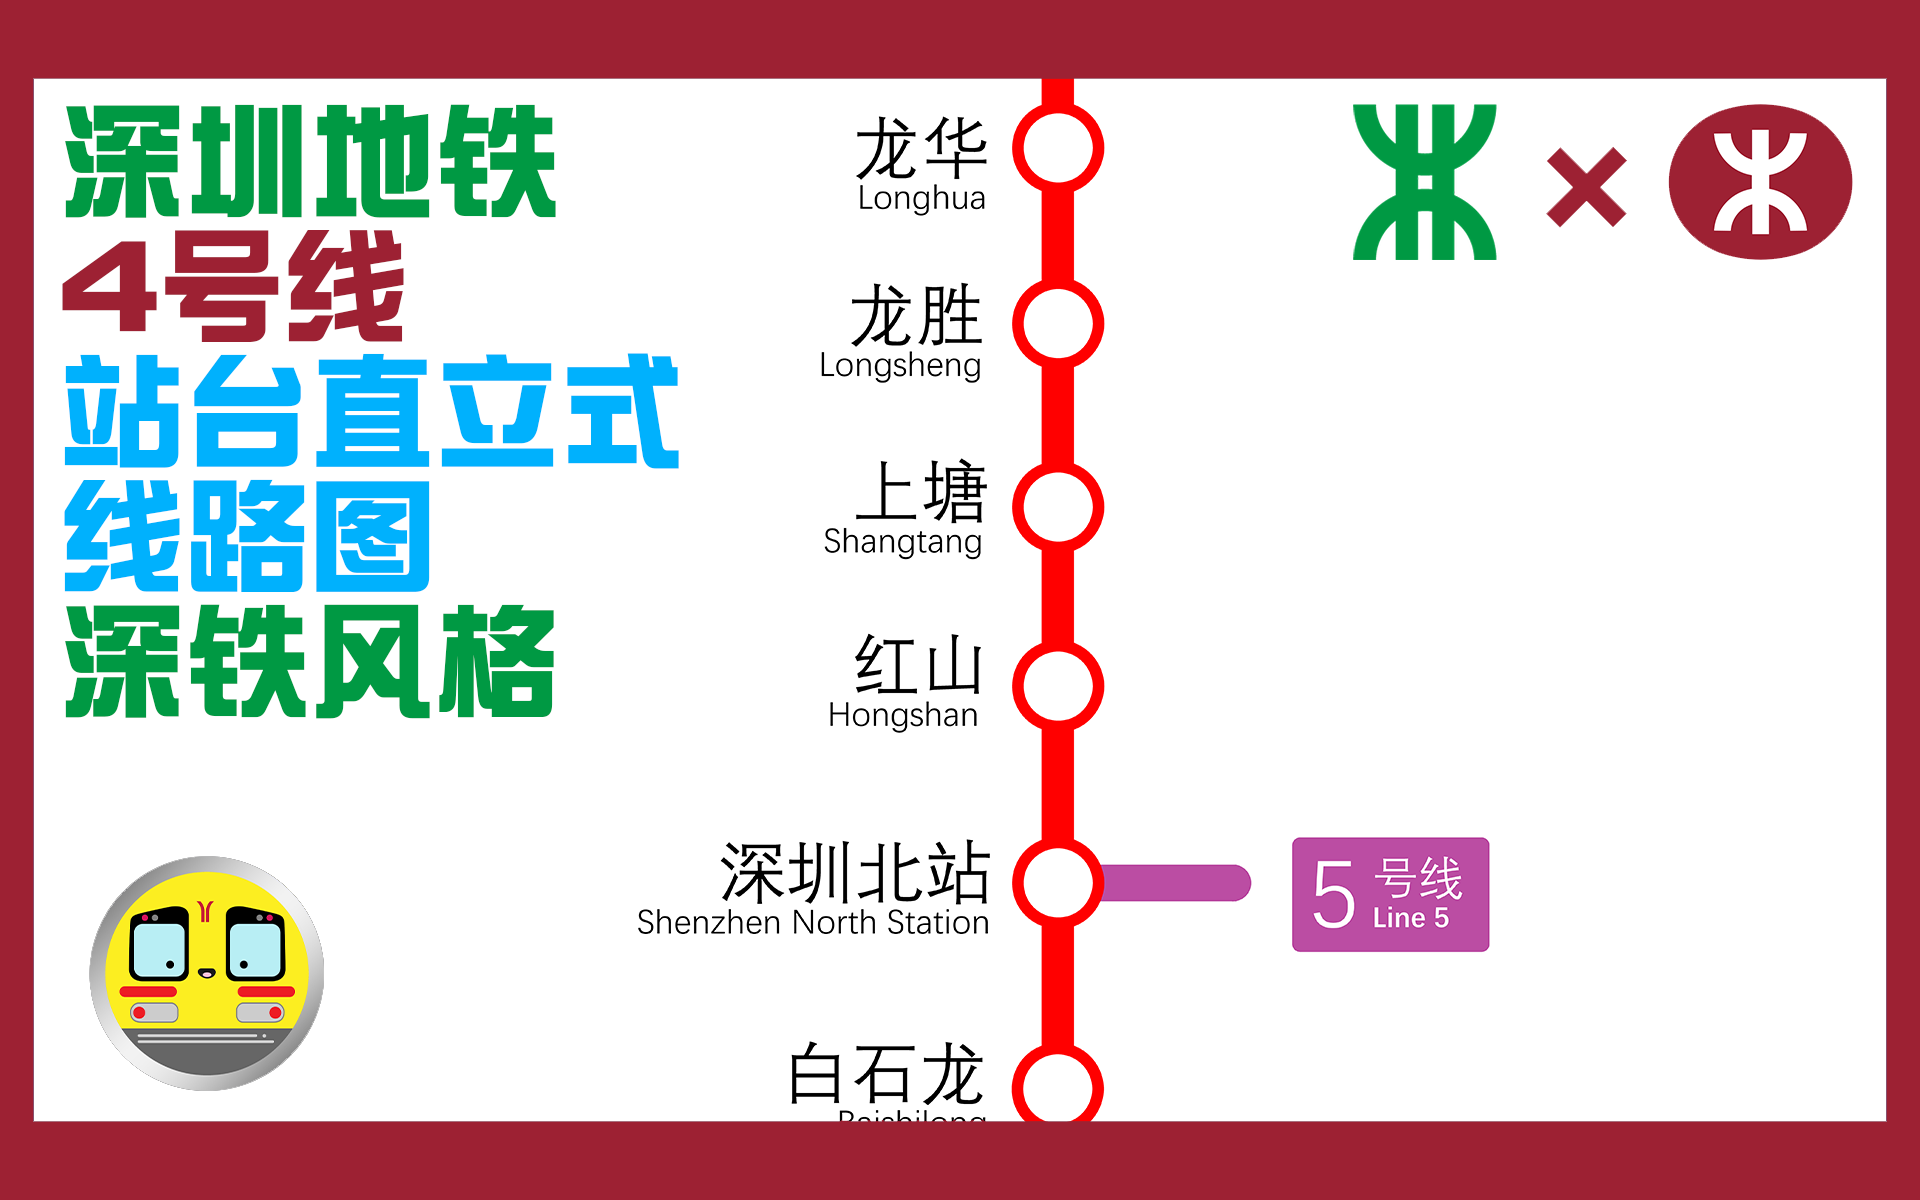 线路图制作深圳地铁4号线龙华线站台直立式线路图深圳地铁风格